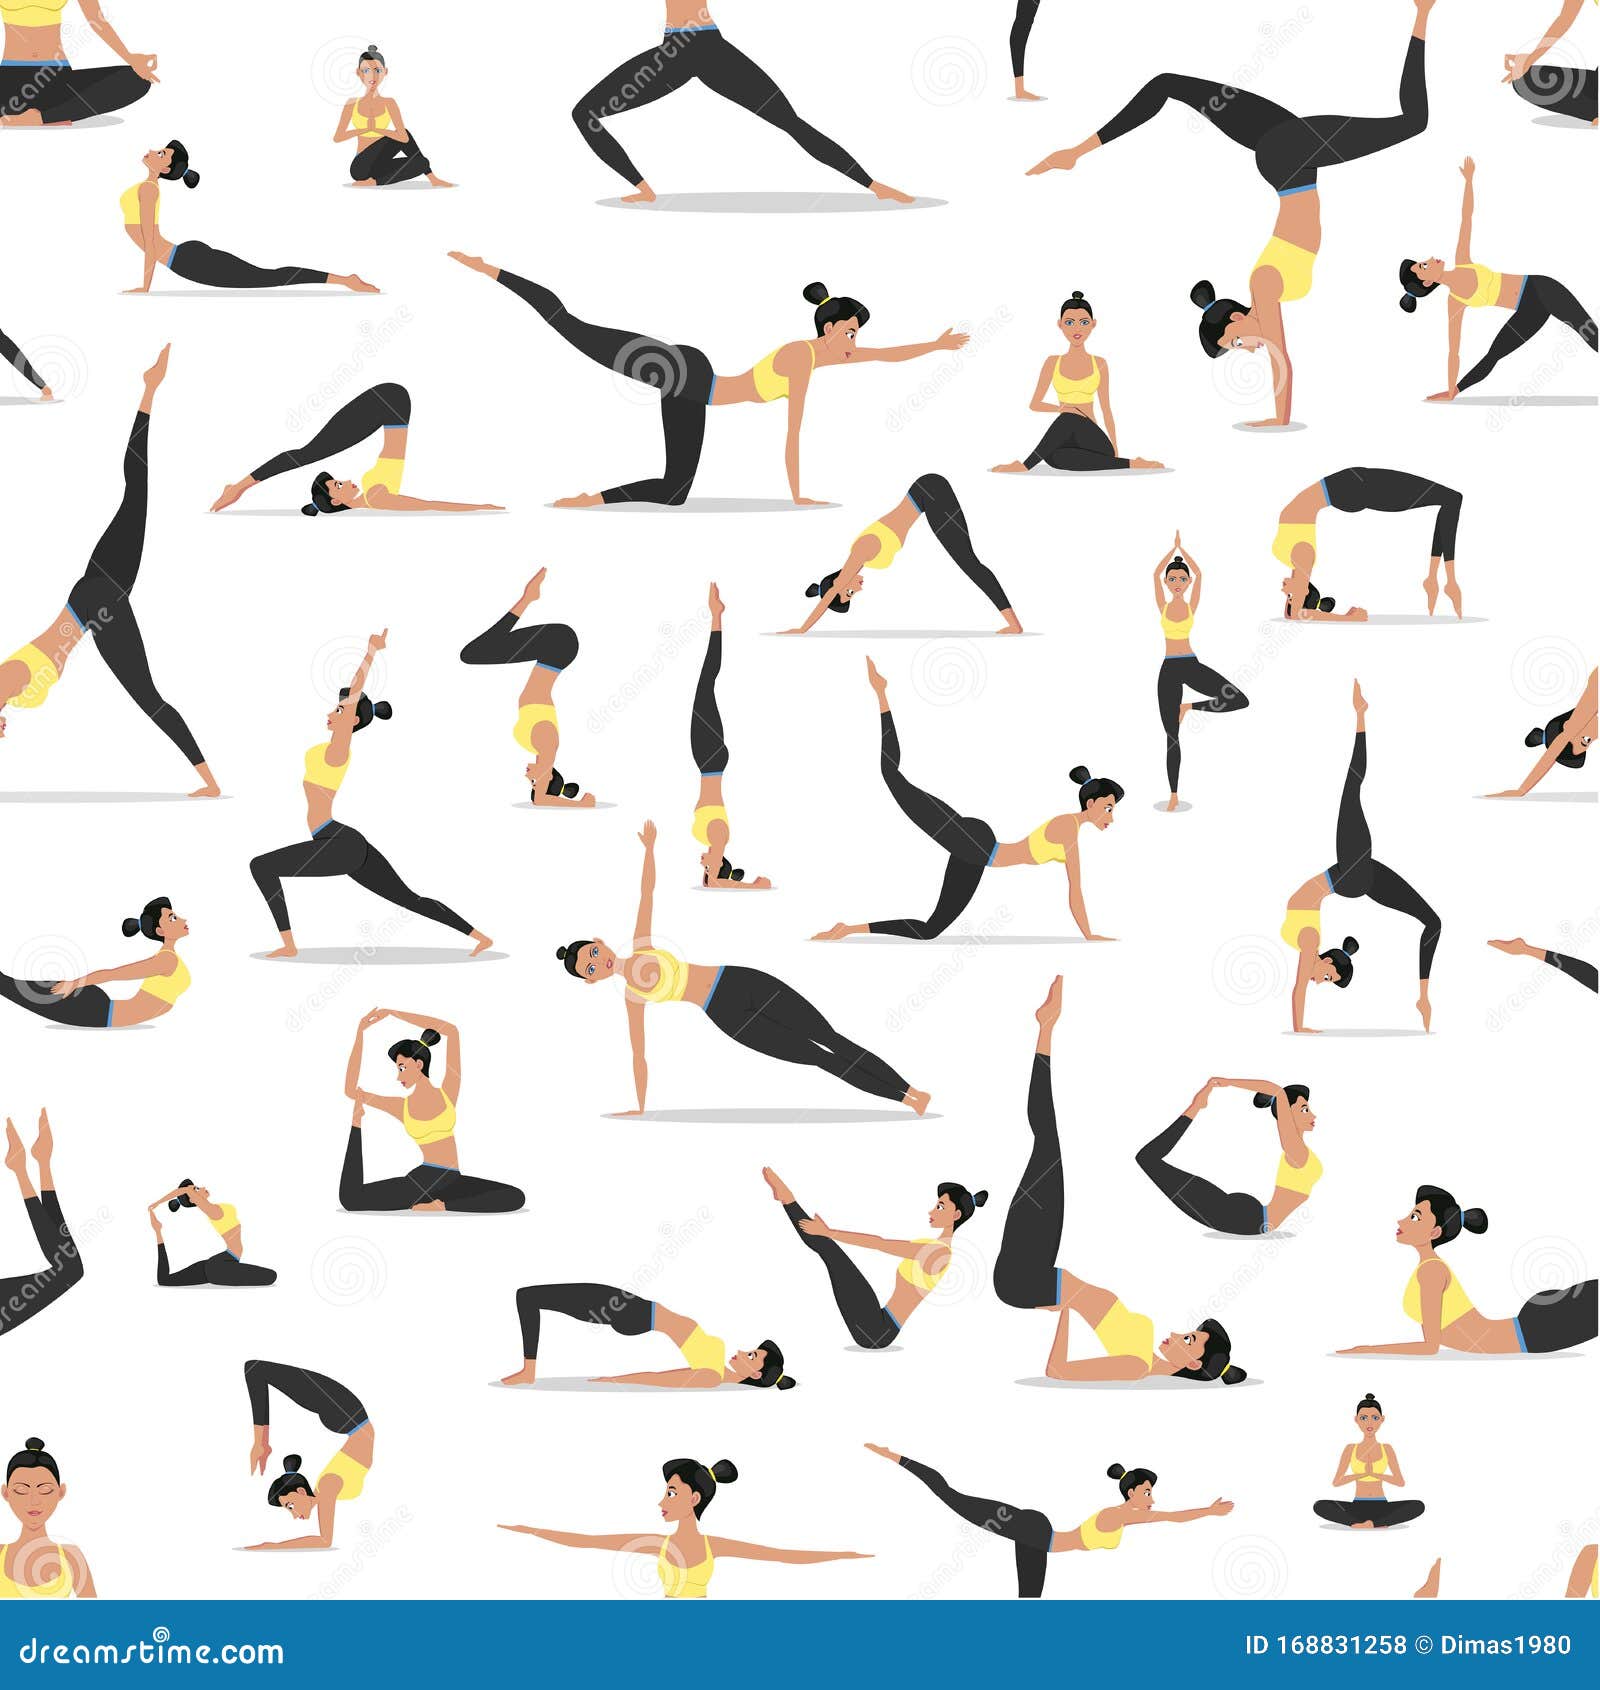 El Diseño De Asanas De Yoga Es Transparente Stock de ilustración Ilustración de atractivo: 168831258